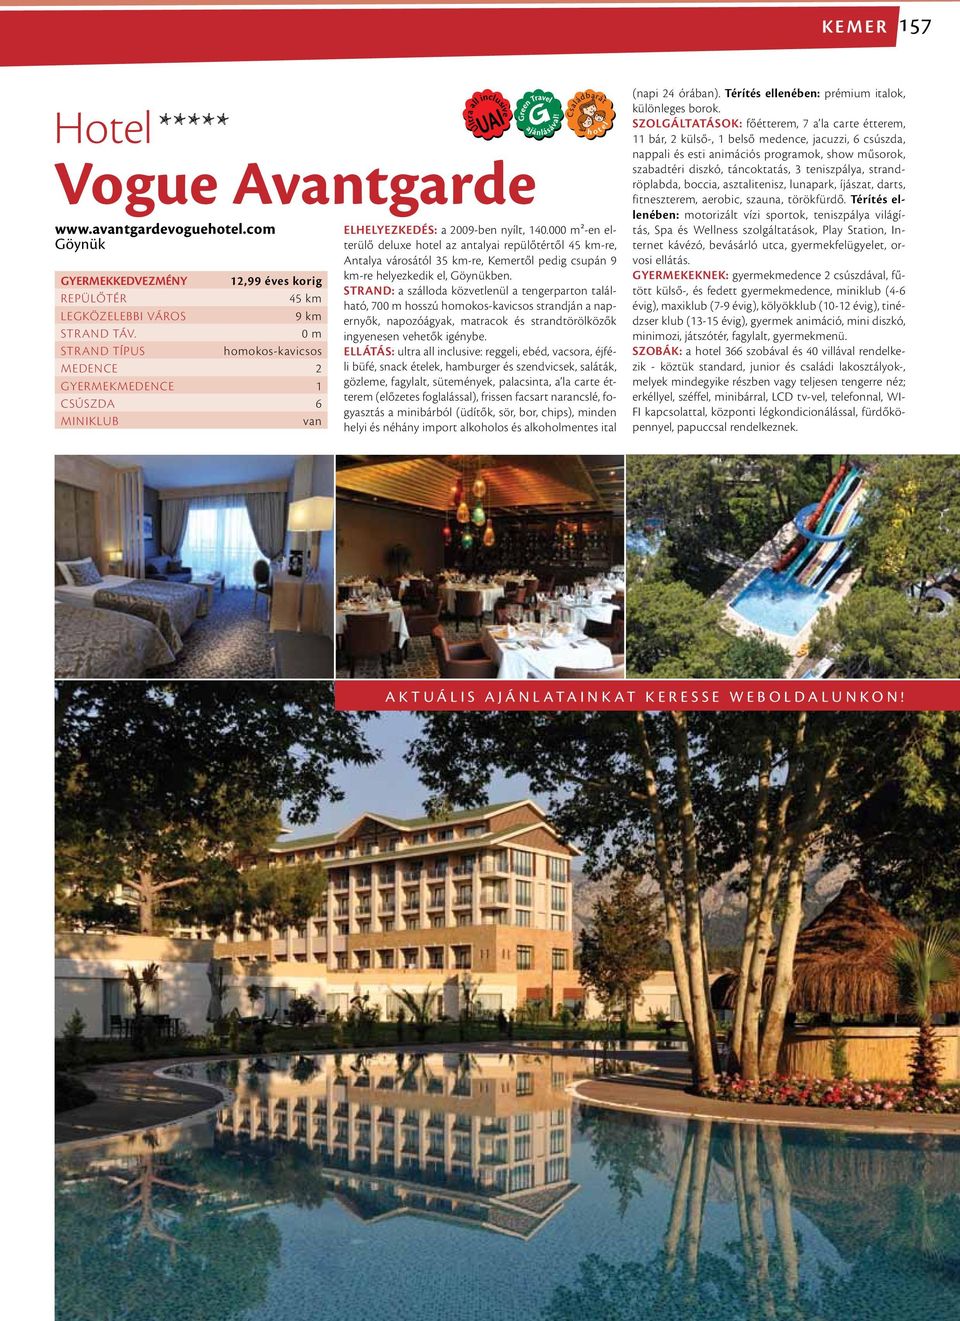 00²-en elterülő deluxe hotel az antalyai repülőtértől 45 km-re, Antalya városától 35 km-re, Kemertől pedig csupán 9 km-re helyezkedik el, Göynükben.